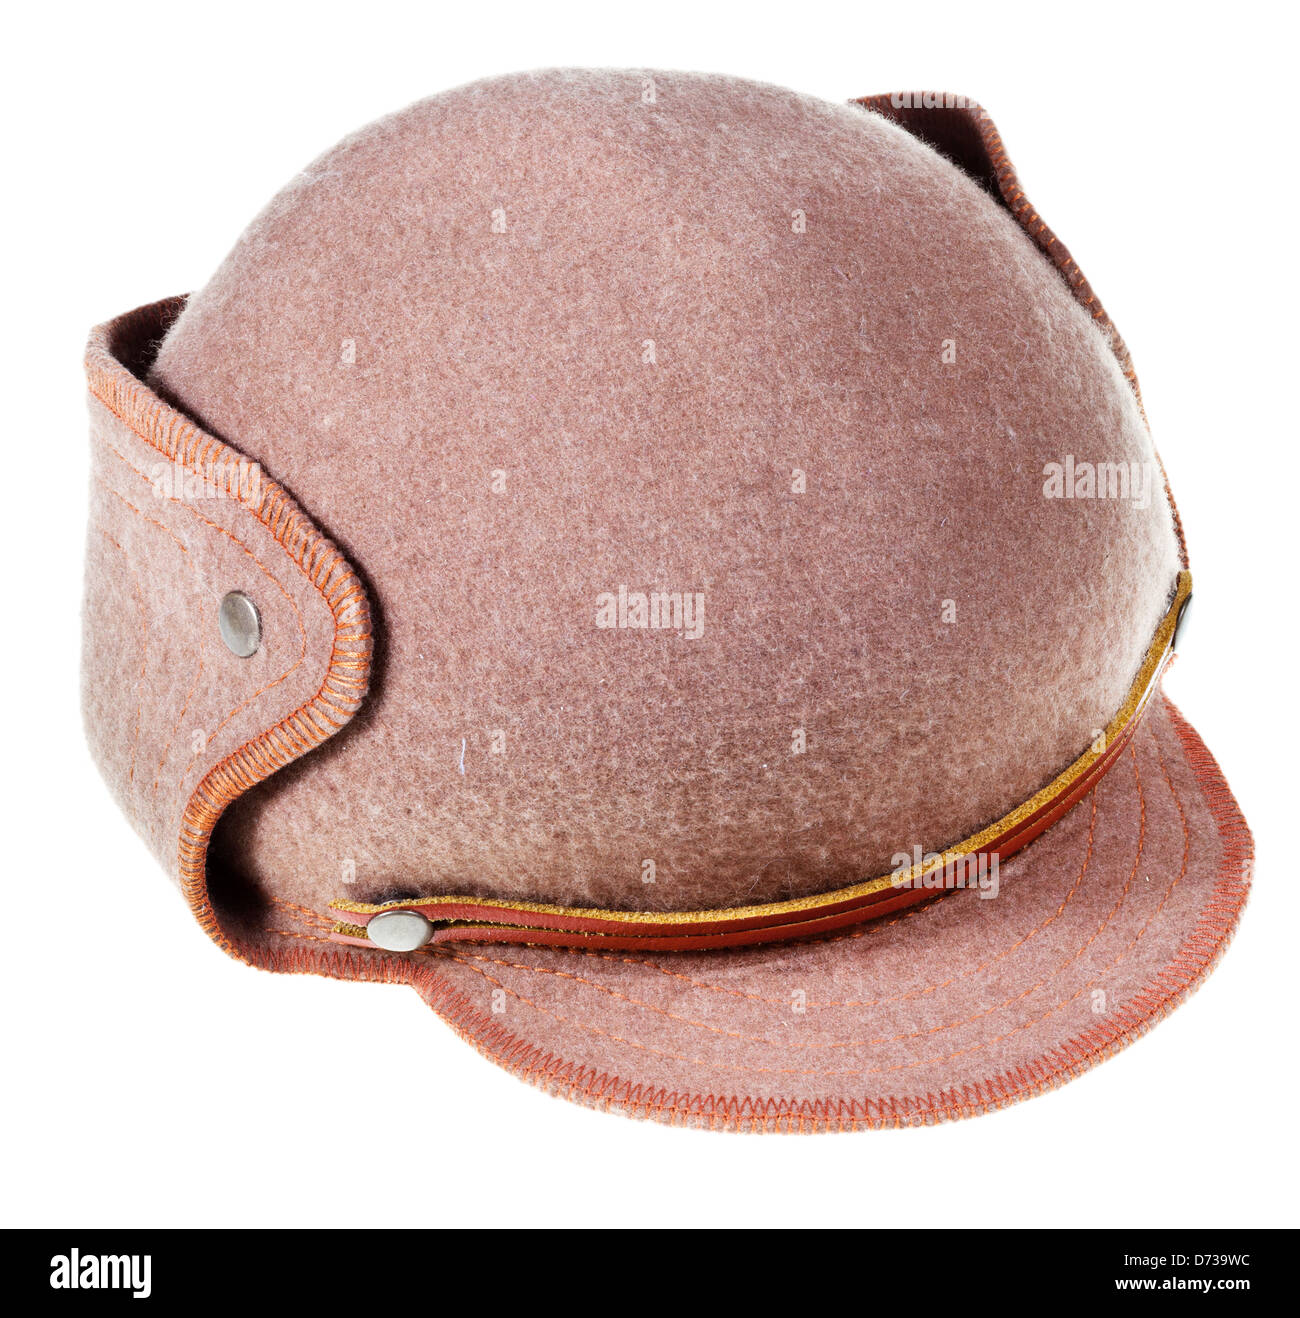 felt soft hat ushanka with cap peak isolated on white background Stock Photo